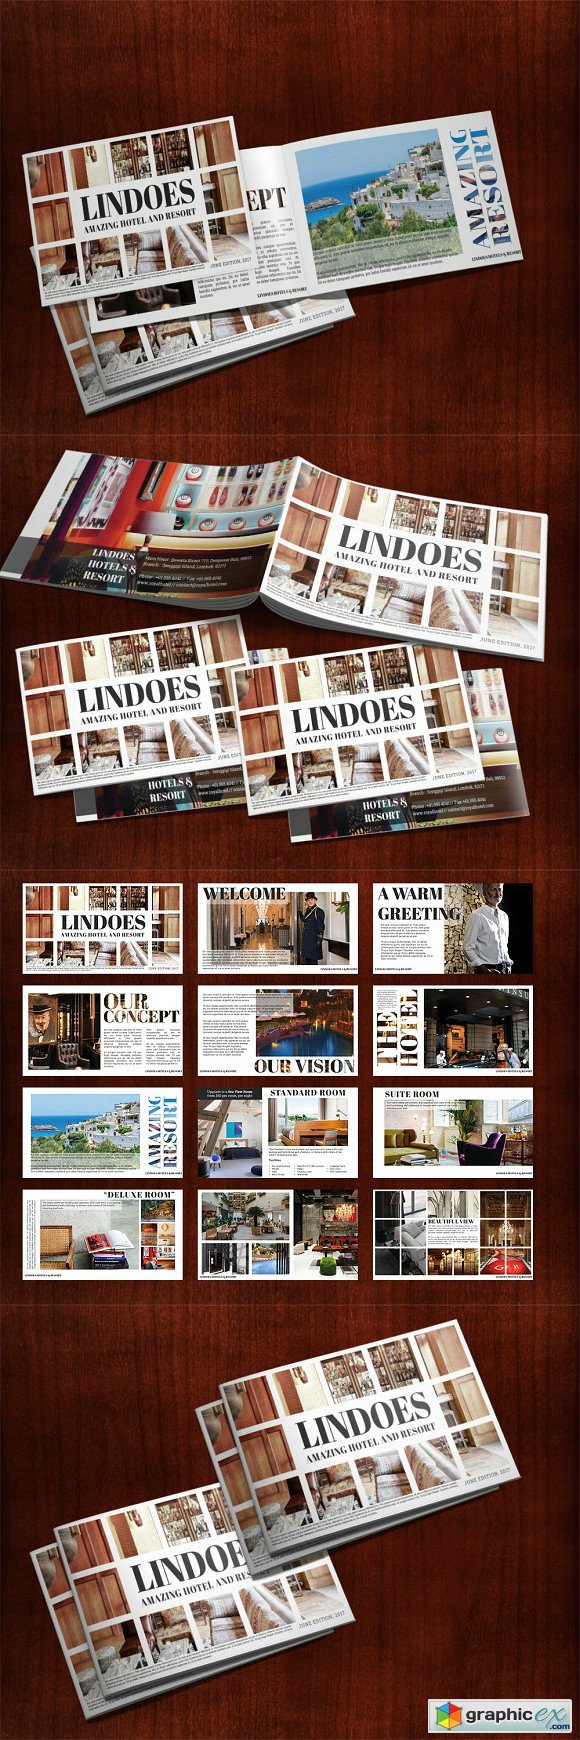 Lindoes - Hotel 2K17 Presentation